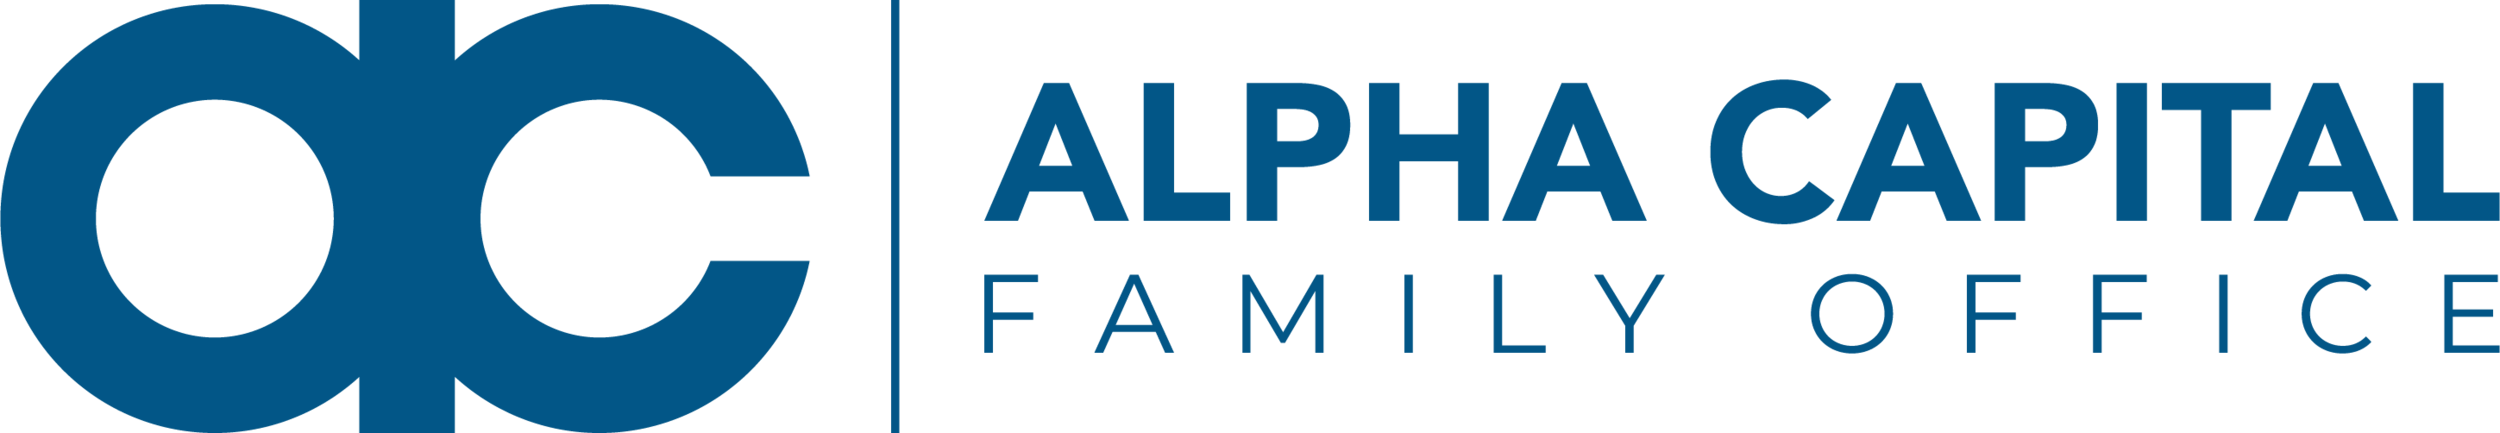 Alpha Capital Family Office